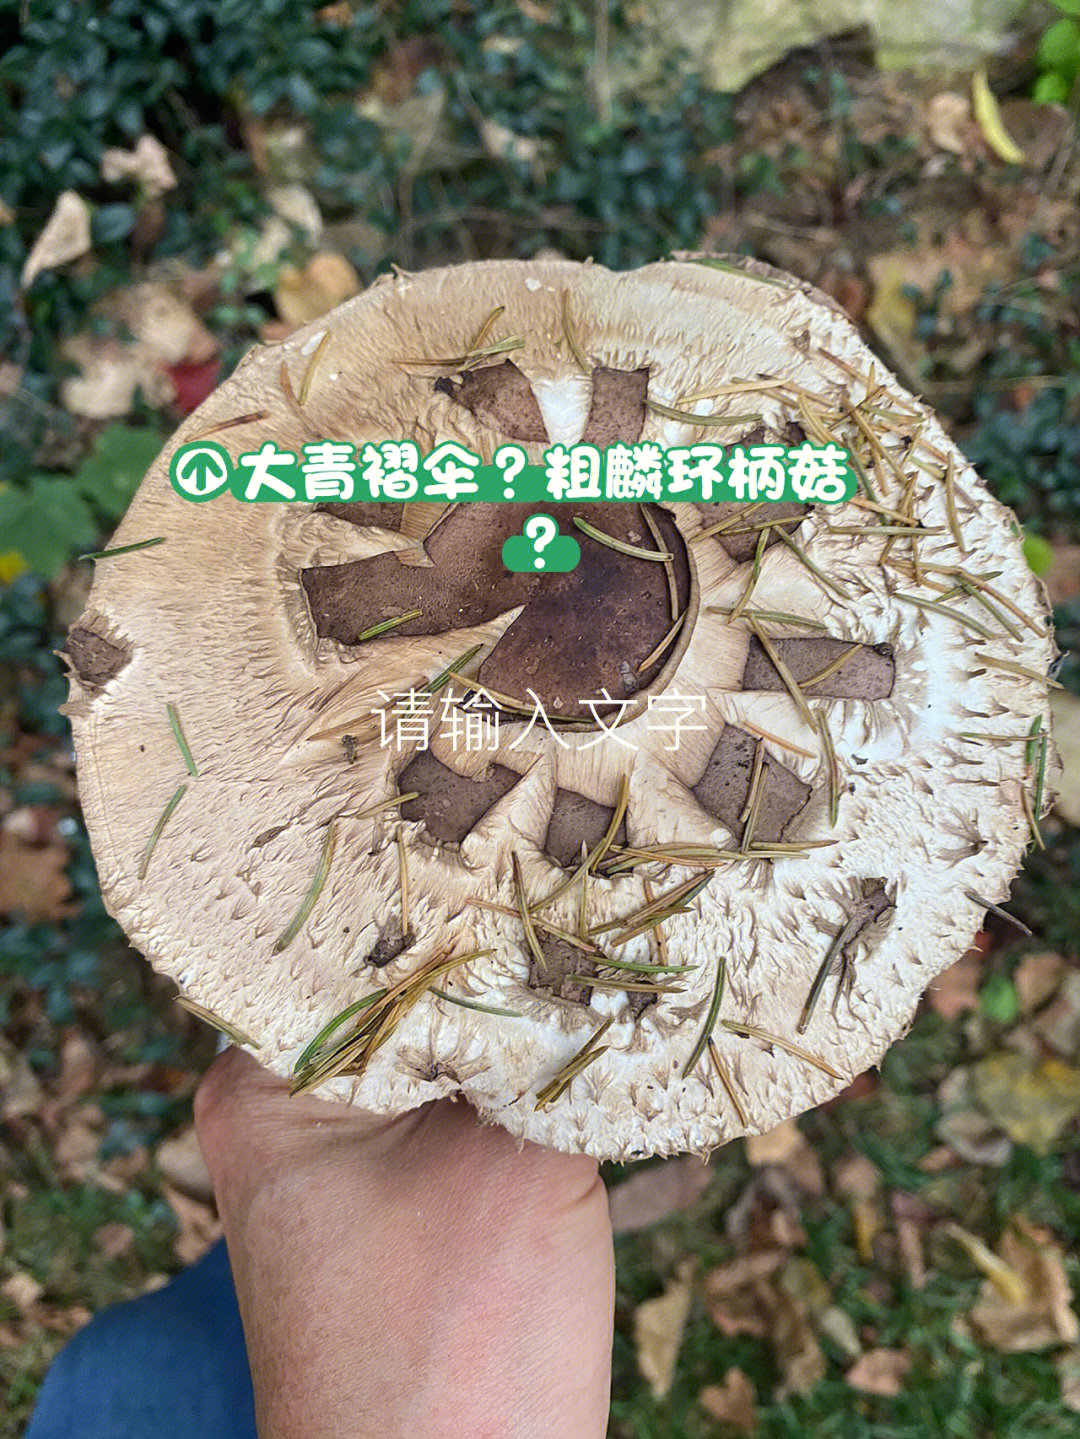 请问朋友们这个蘑菇是大青褶伞还是粗麟环柄菇?